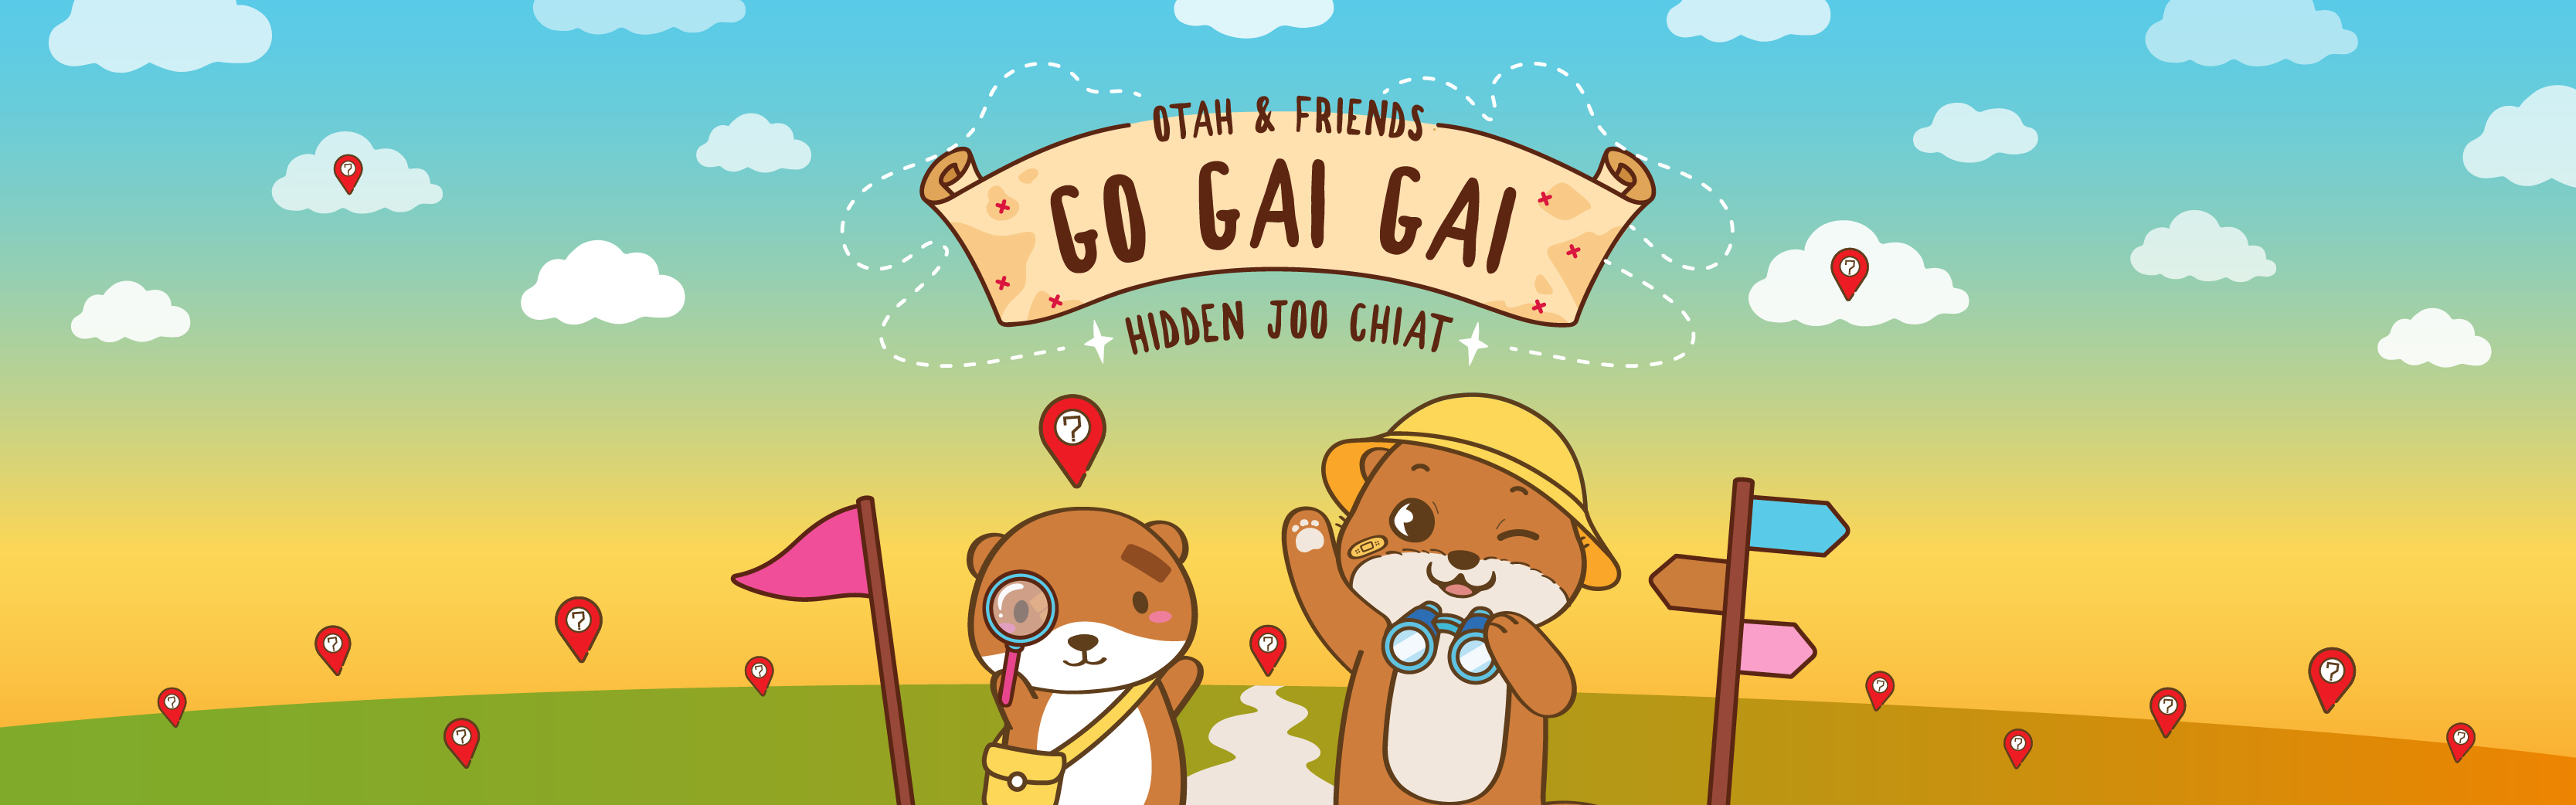 Otah & Friends: Go Gai Gai - Hidden Joo Chiat